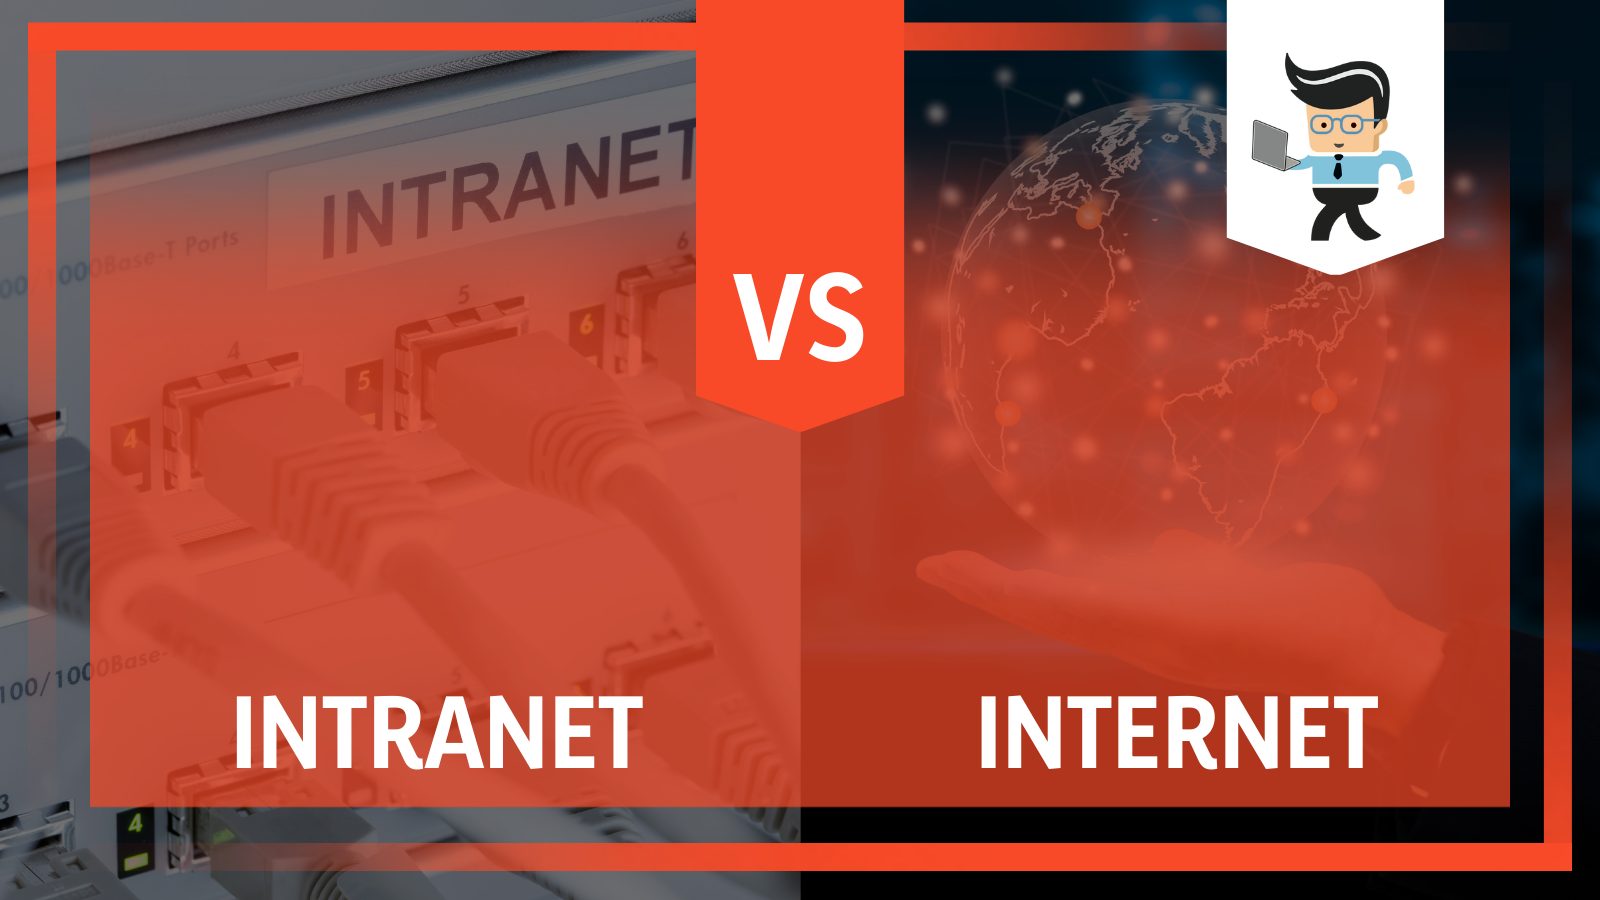 Intranet vs Internet Comparison